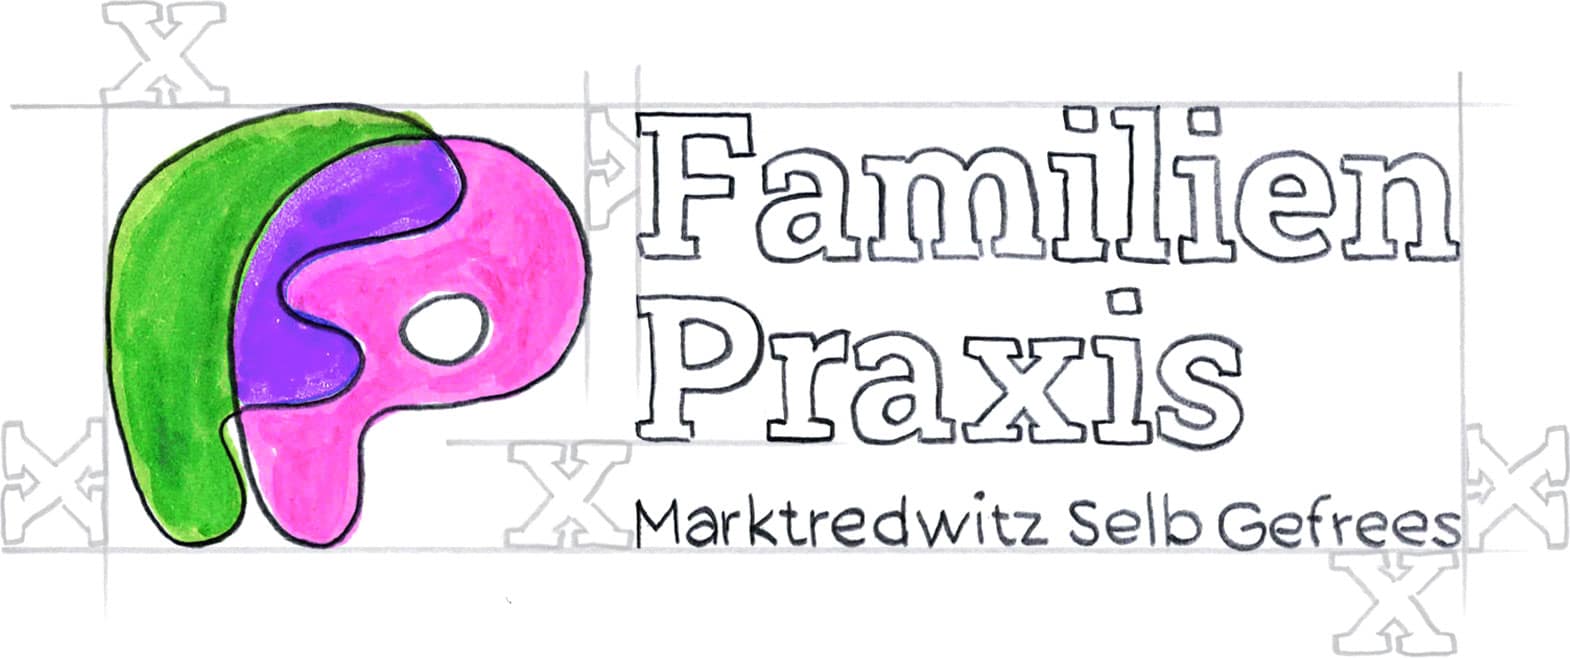 marketing-oberfranken-familienpraxis-logoentwicklung-logo-skizze-scribble